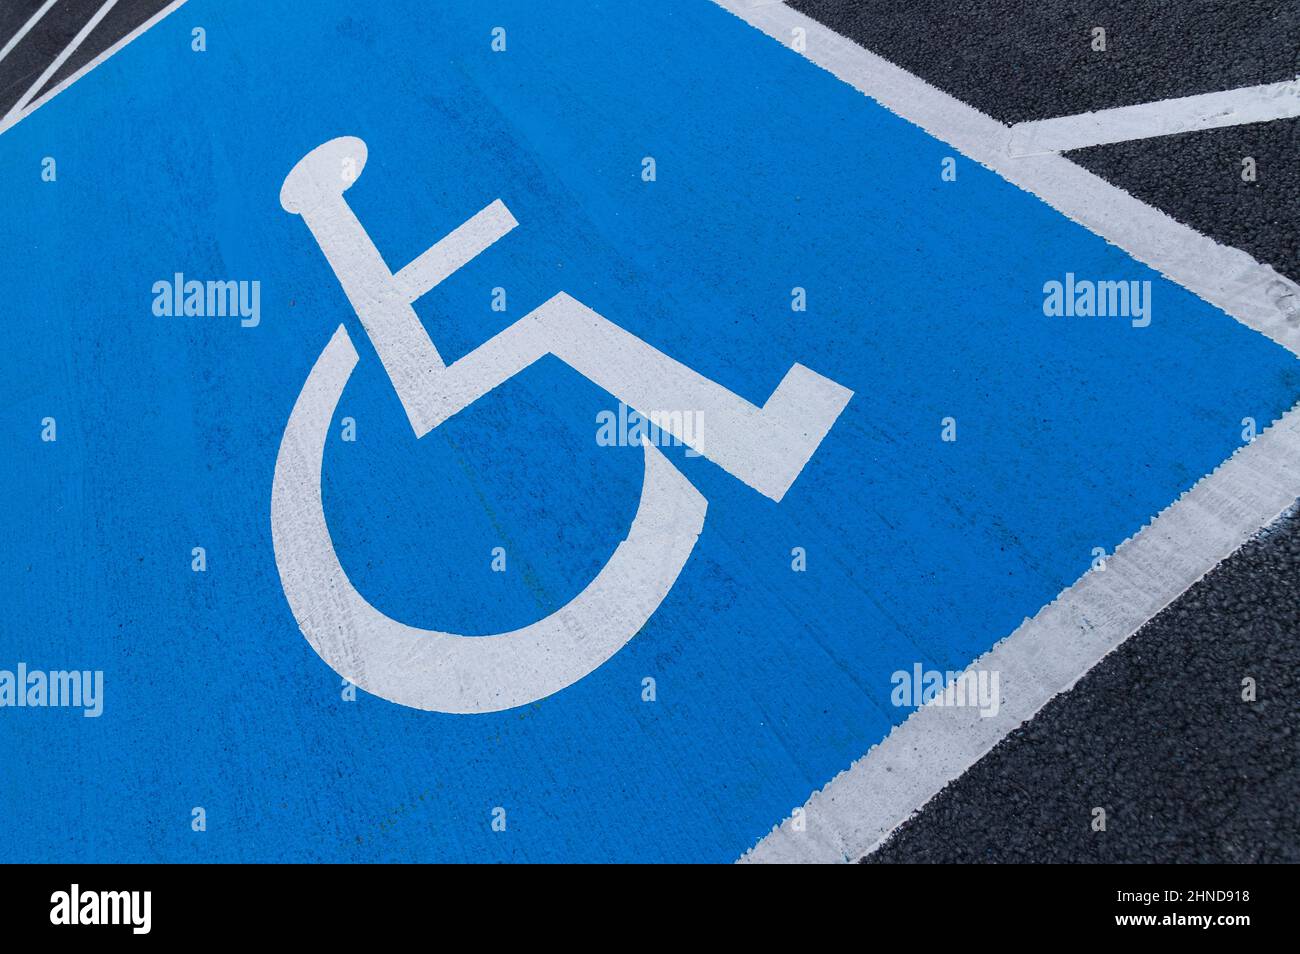 Irlanda, County Offaly, Tullamore, parcheggio per disabili. Foto Stock